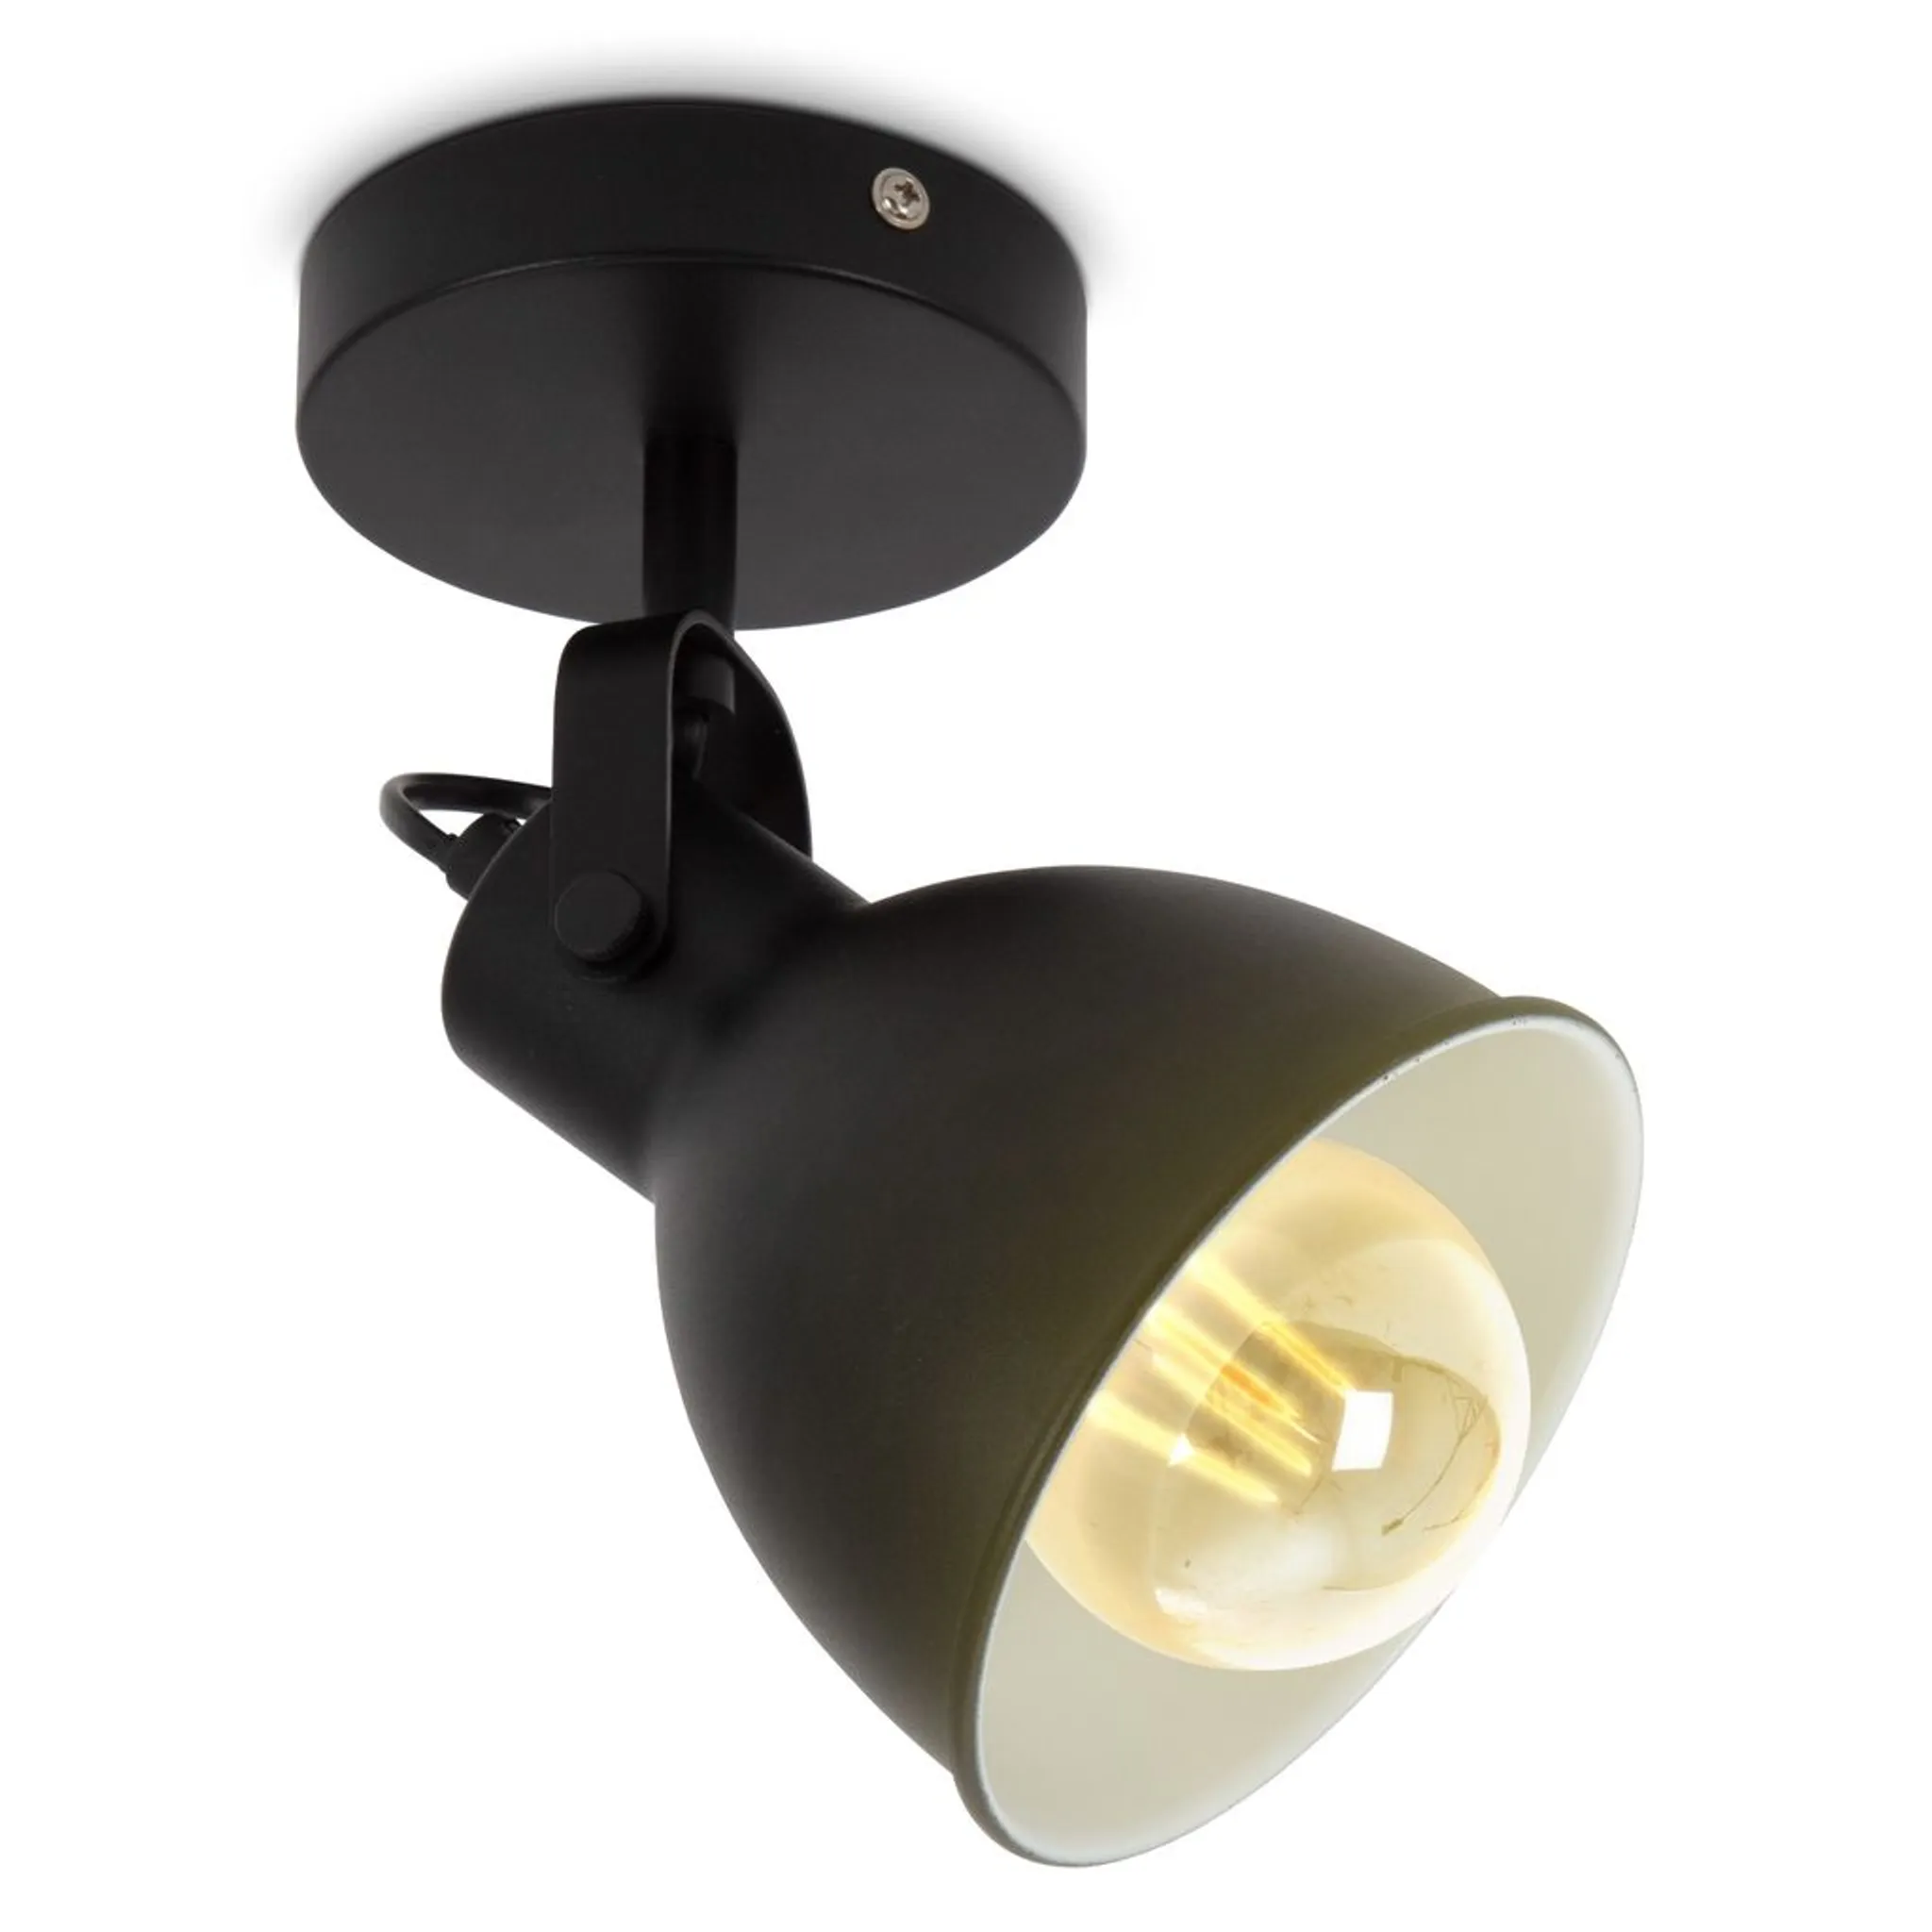 LED Wandlampe Spot matt Vintage Wandleuchte schwarz E27 Design Retro Industrial